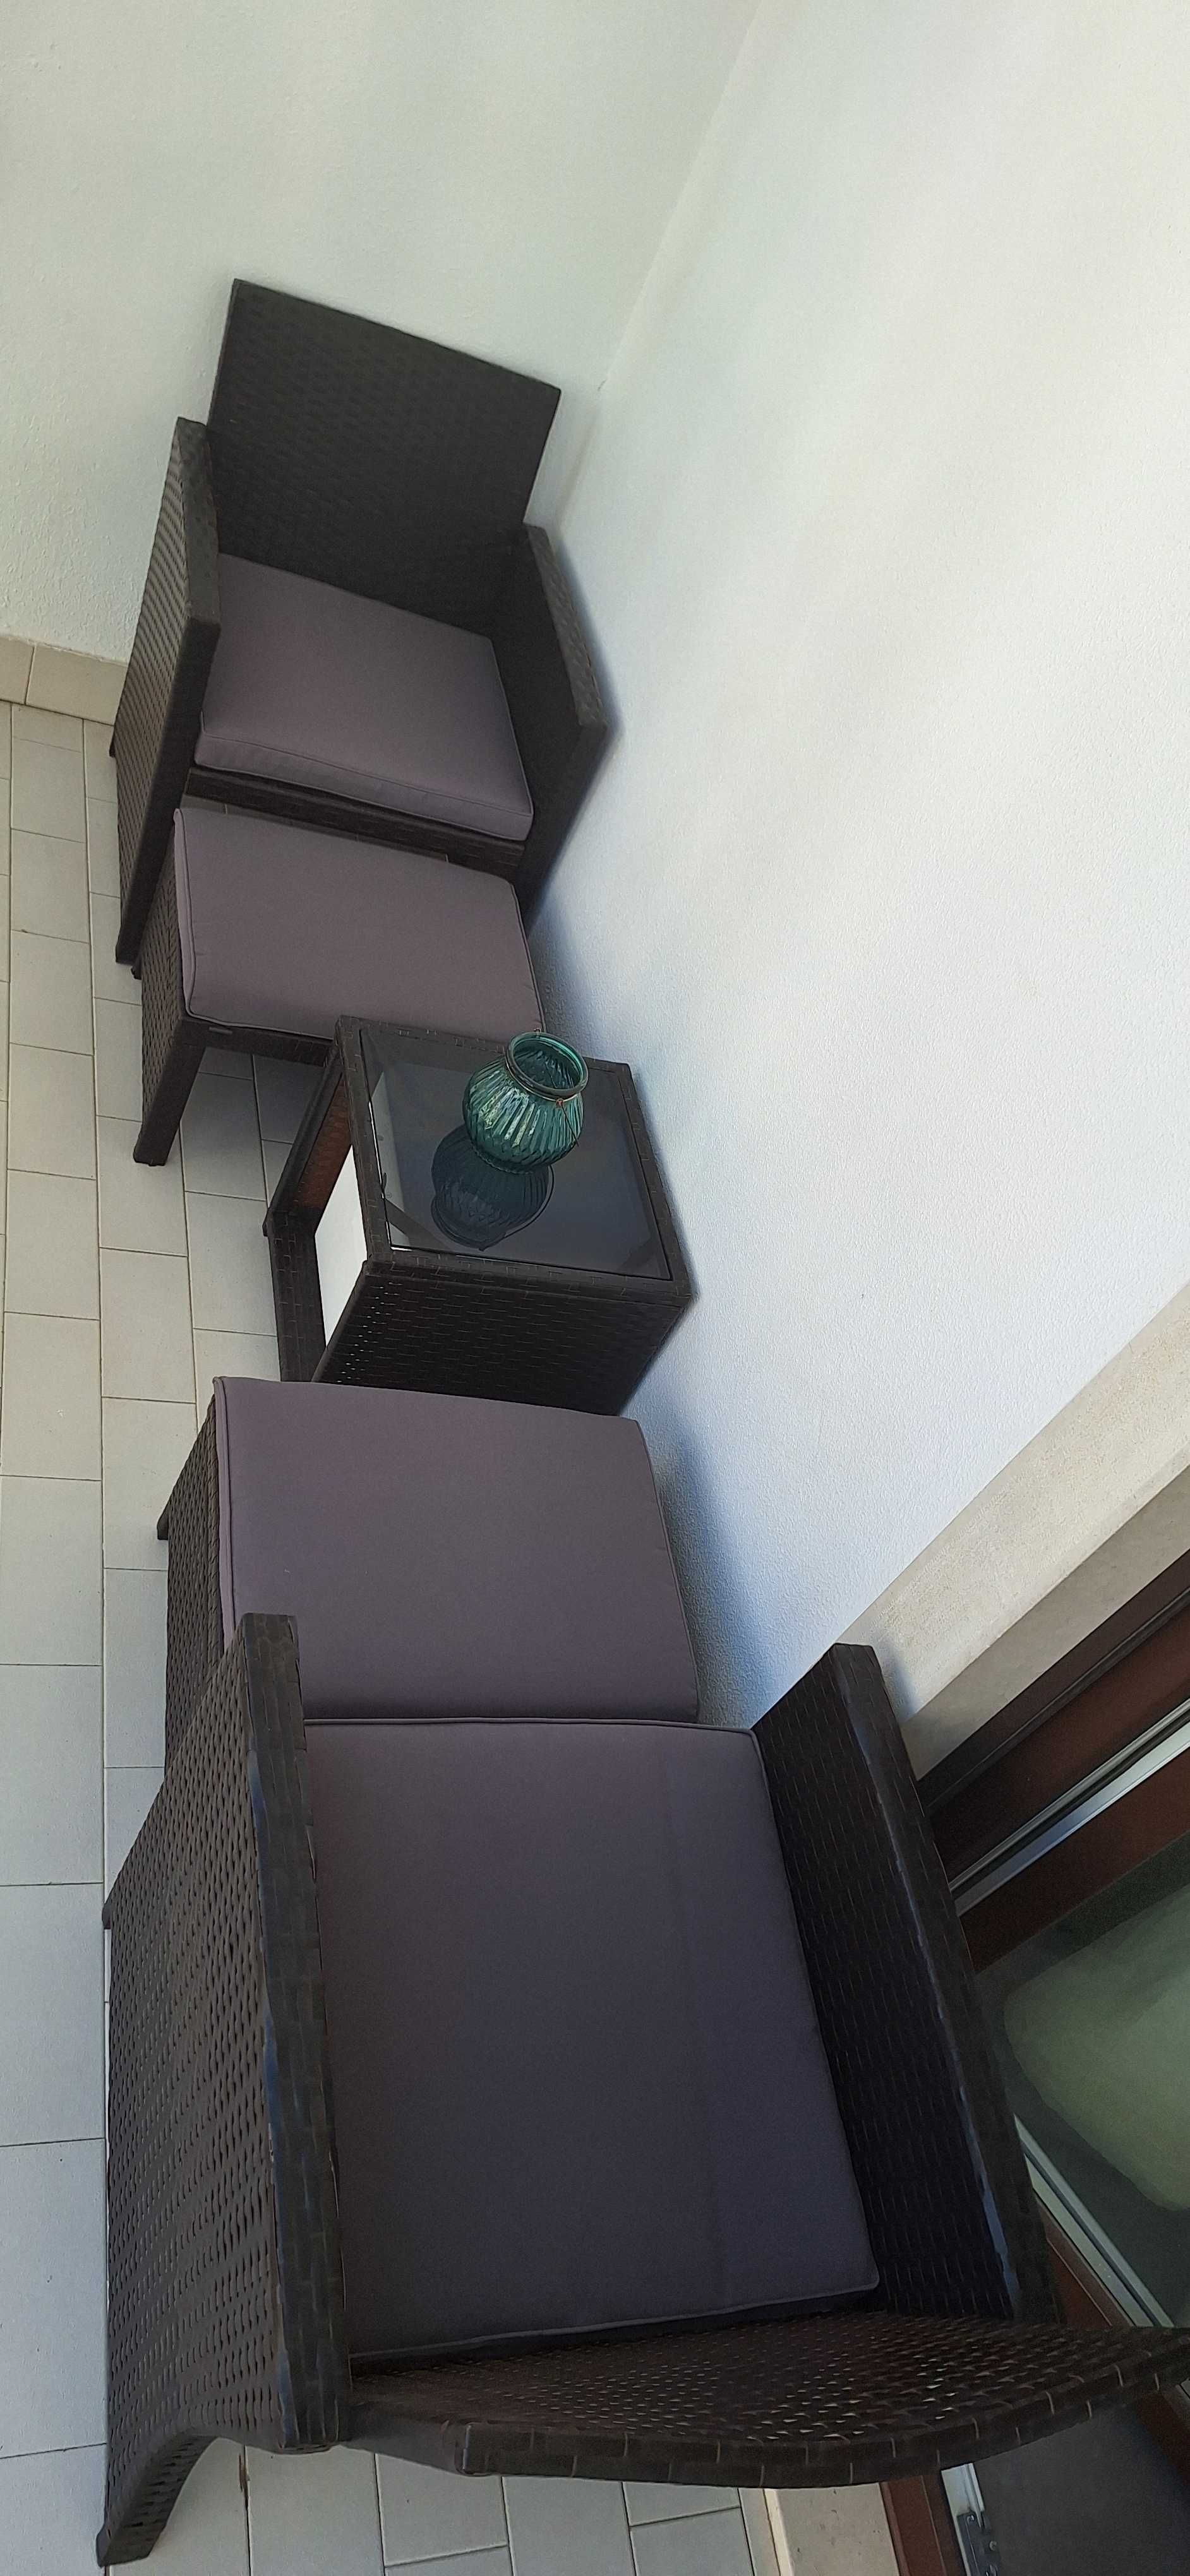 Conjunto móveis castanhos - cadeiras + bancos + mesa jardim - 5 peças